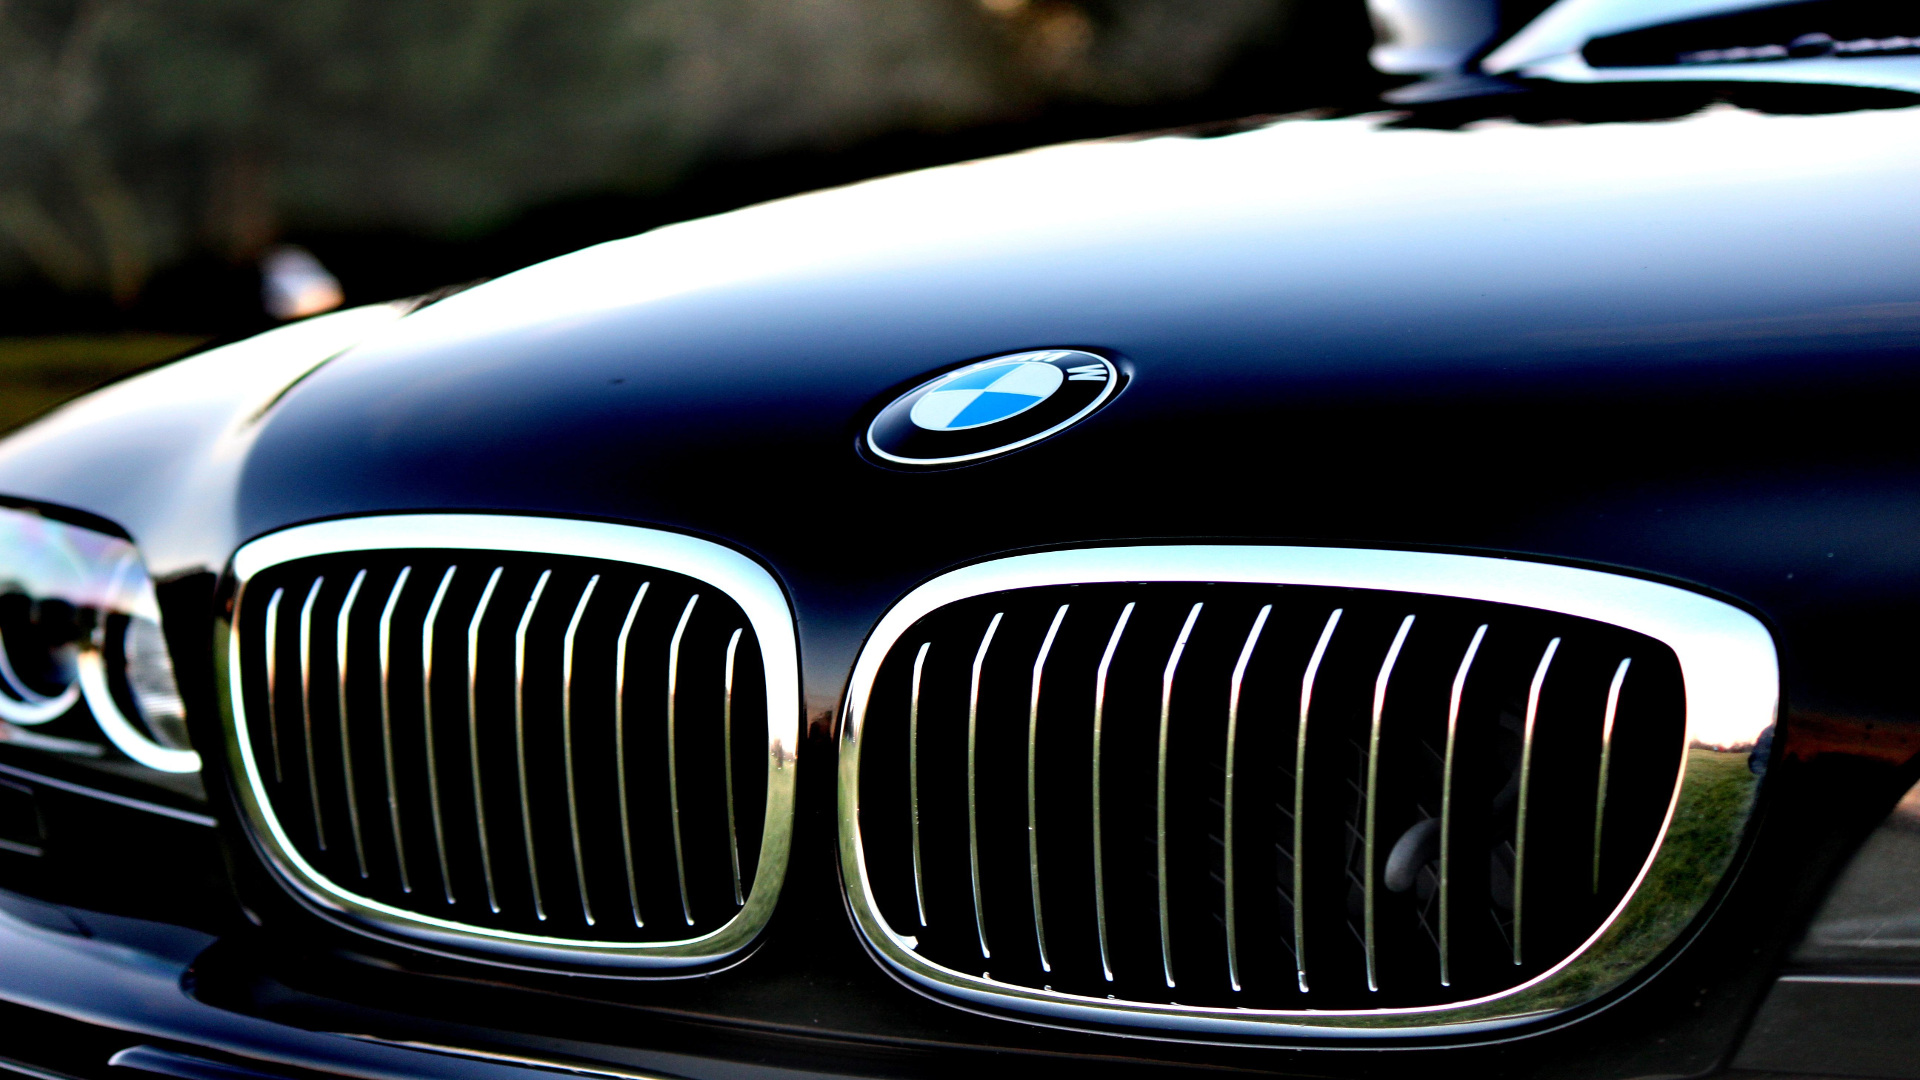 324000 coches de la marca BMW seran revisados por peligro de incendio1920